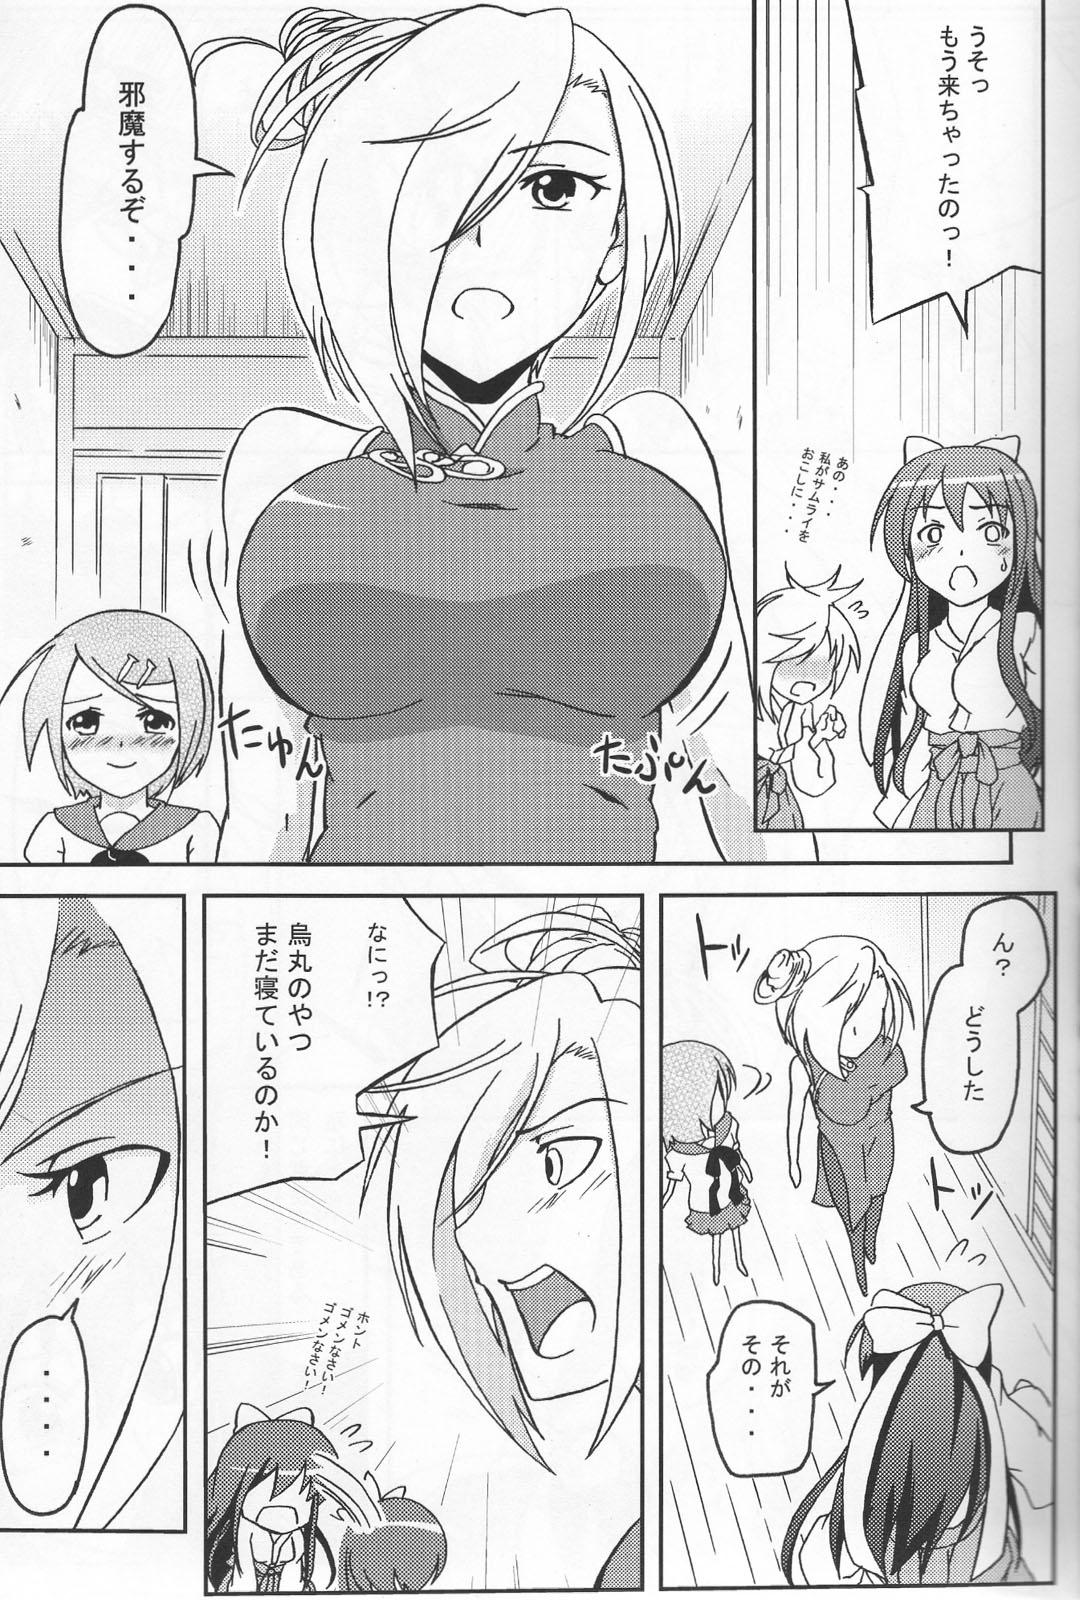 Lesbian Sex [Nikuket 2] [Z-FRONT (Kagato) Newaza no Yoichi (Asu no Yoichi!) - Asu no yoichi From - Page 4